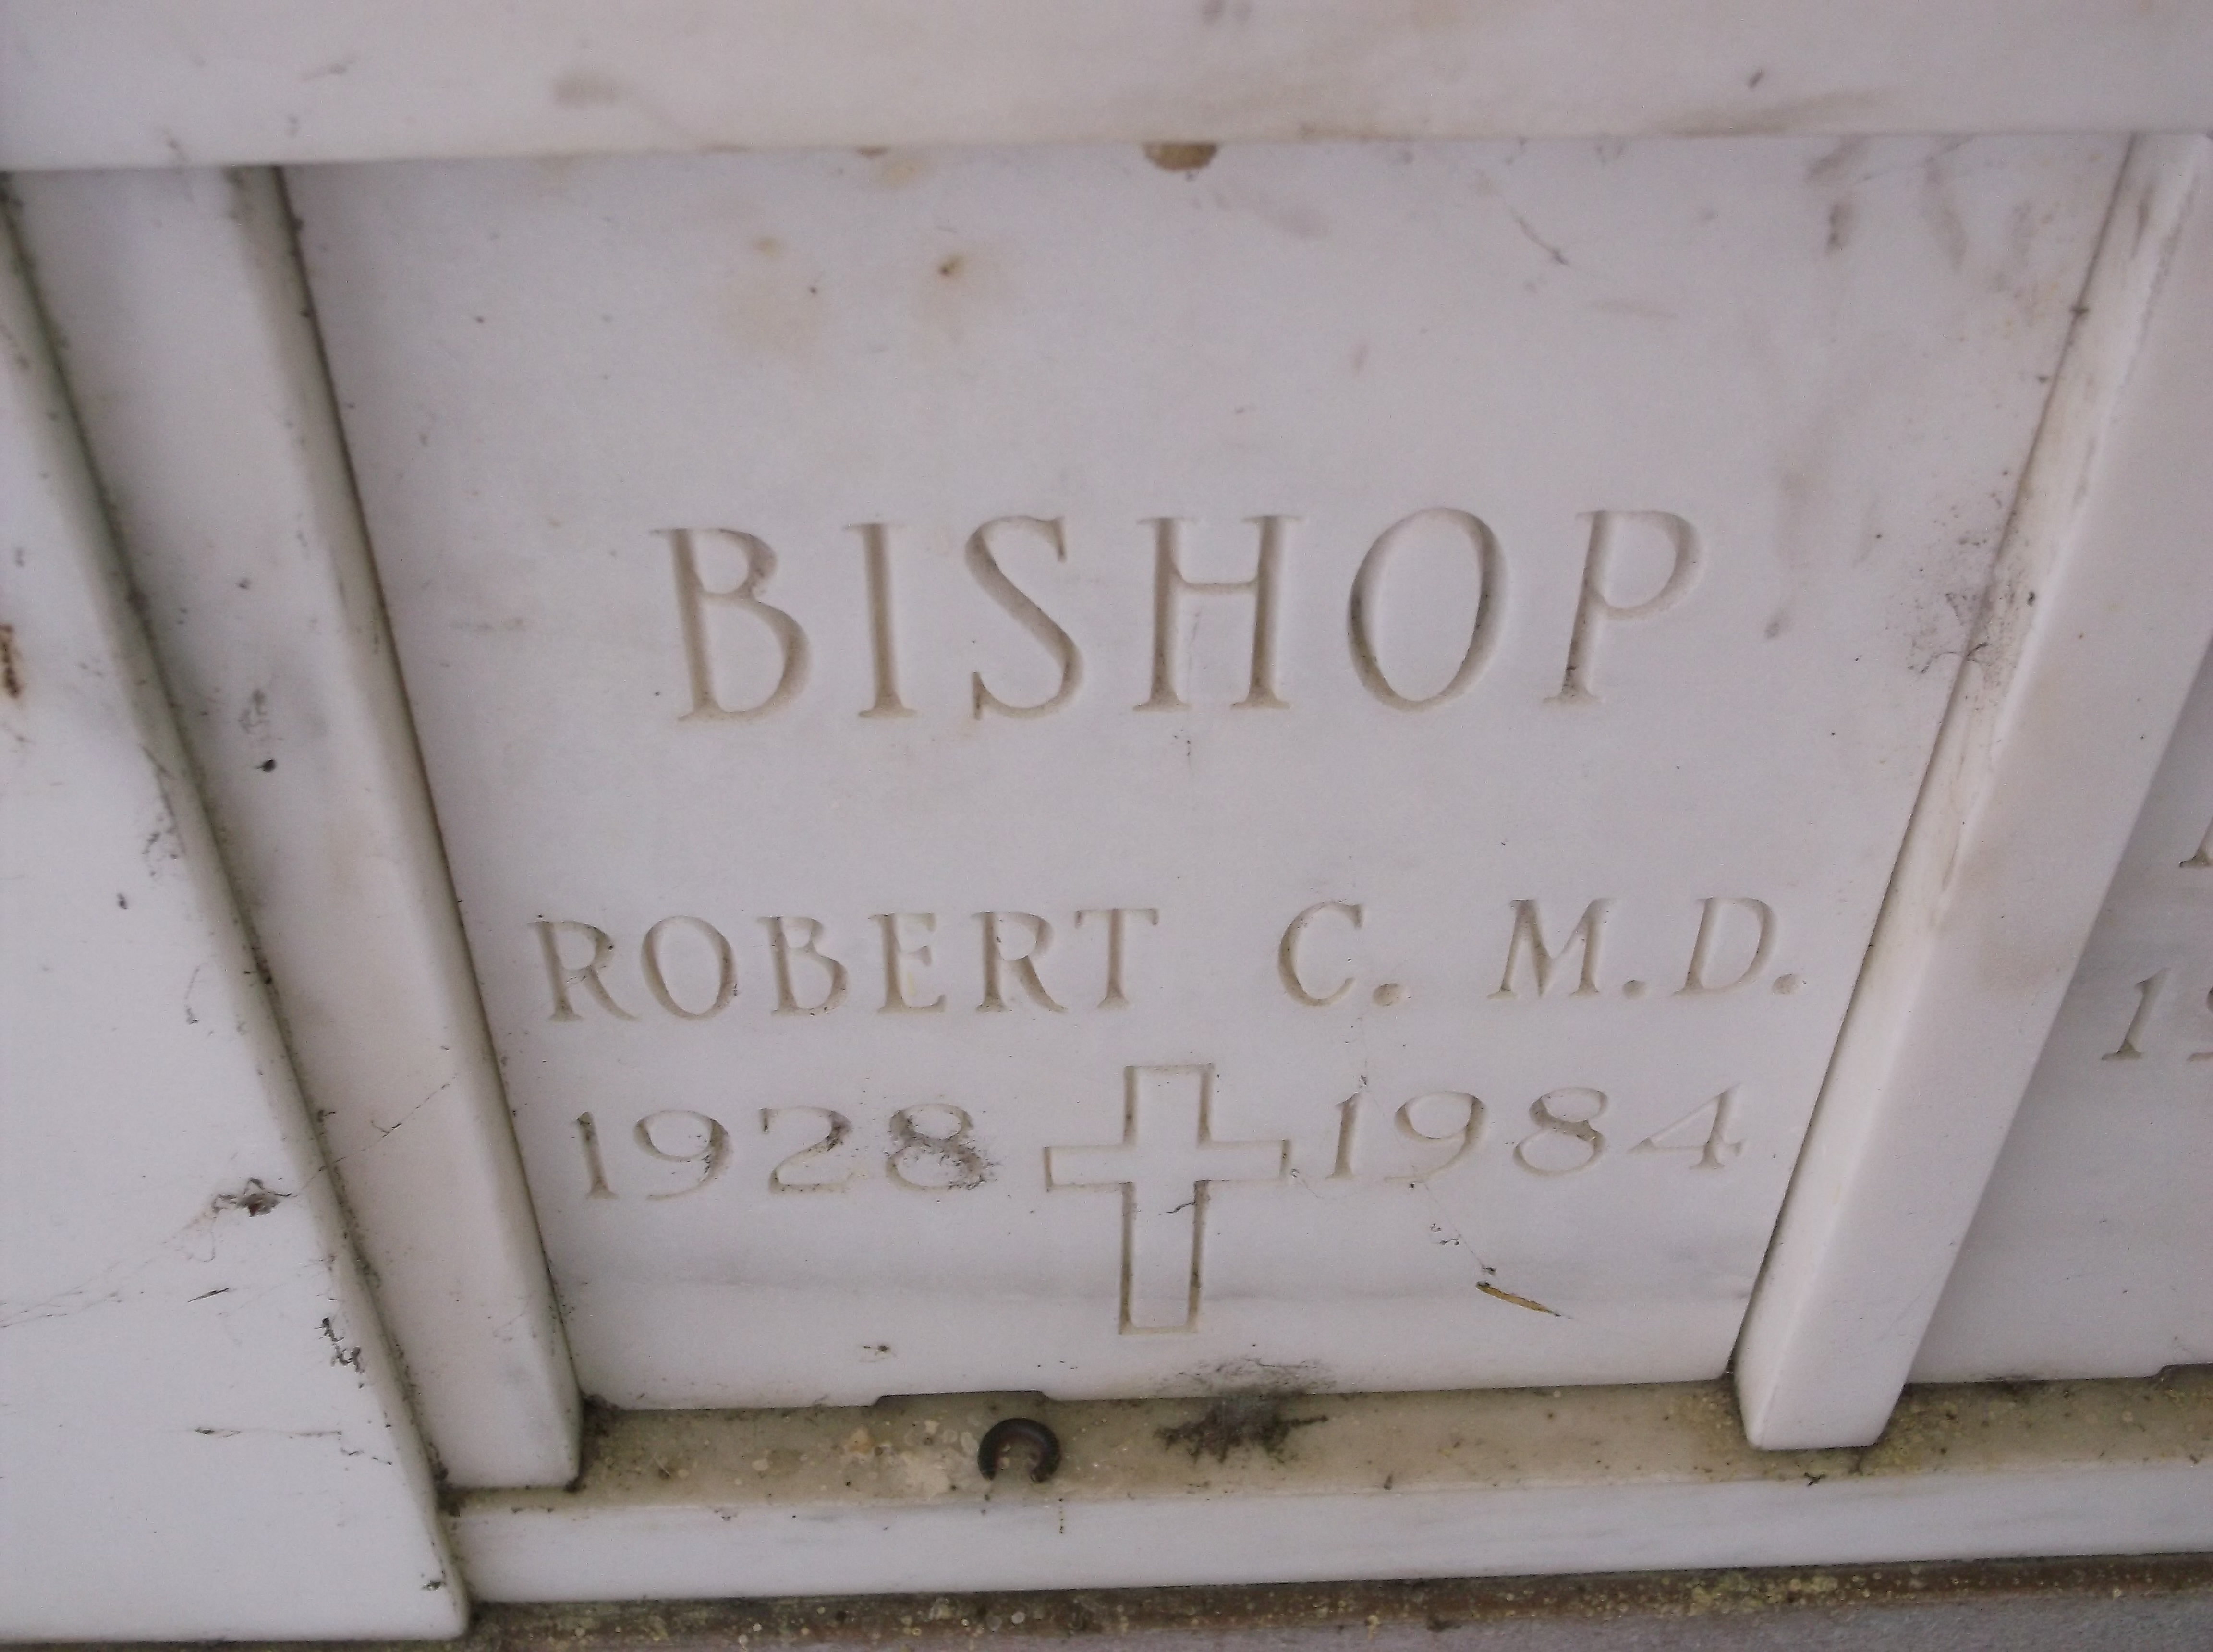 Robert C Bishop